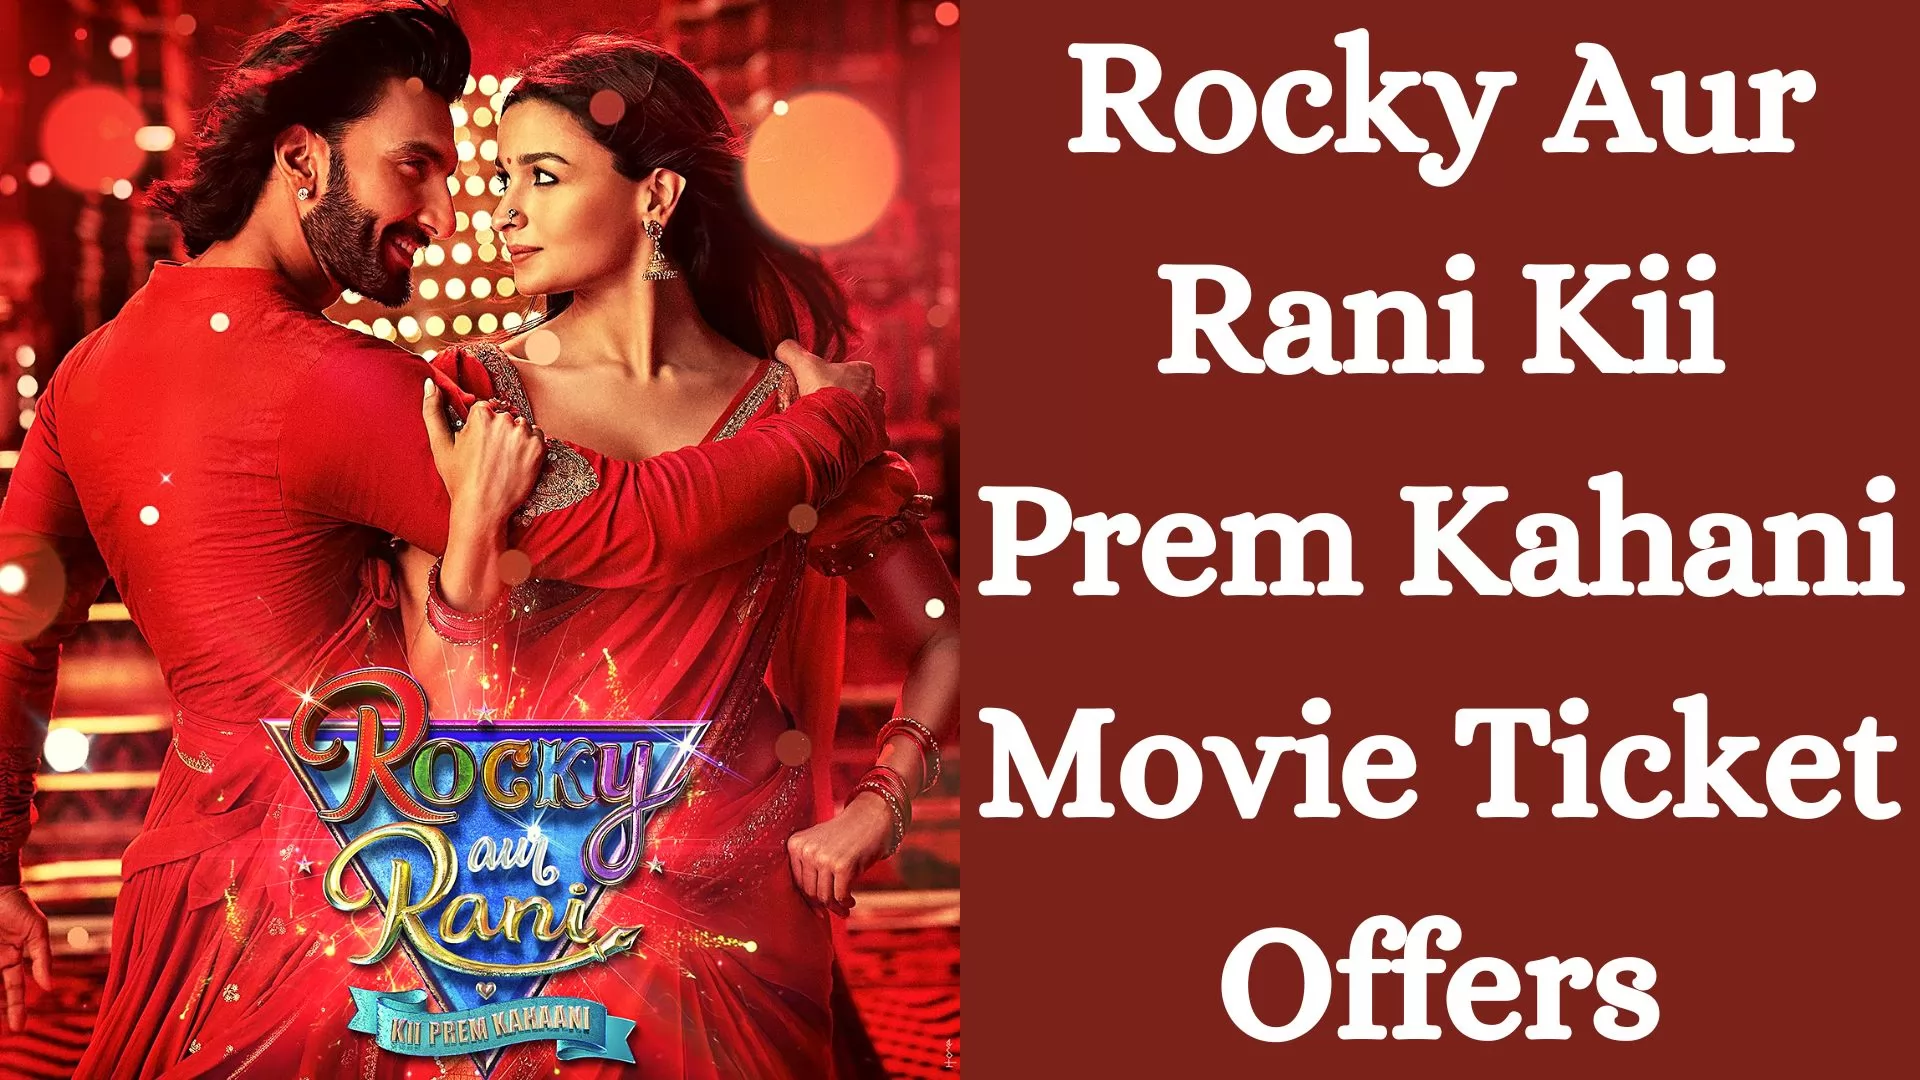 Rocky Aur Rani Kii Prem Kahani Movie Ticket Offers